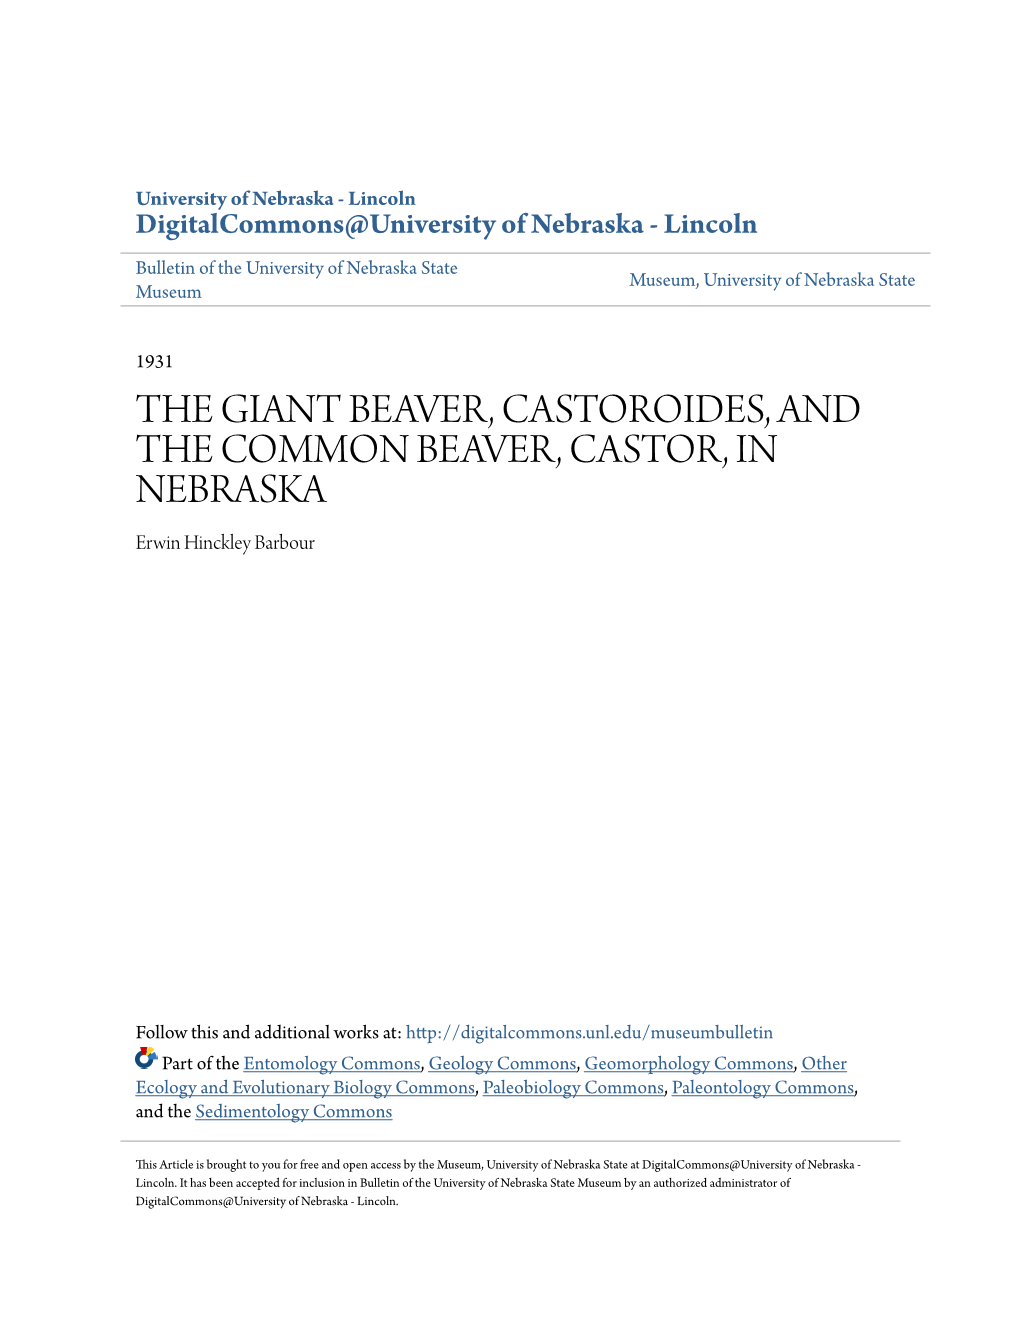 THE GIANT BEAVER, CASTOROIDES, and the COMMON BEAVER, CASTOR, in NEBRASKA Erwin Hinckley Barbour